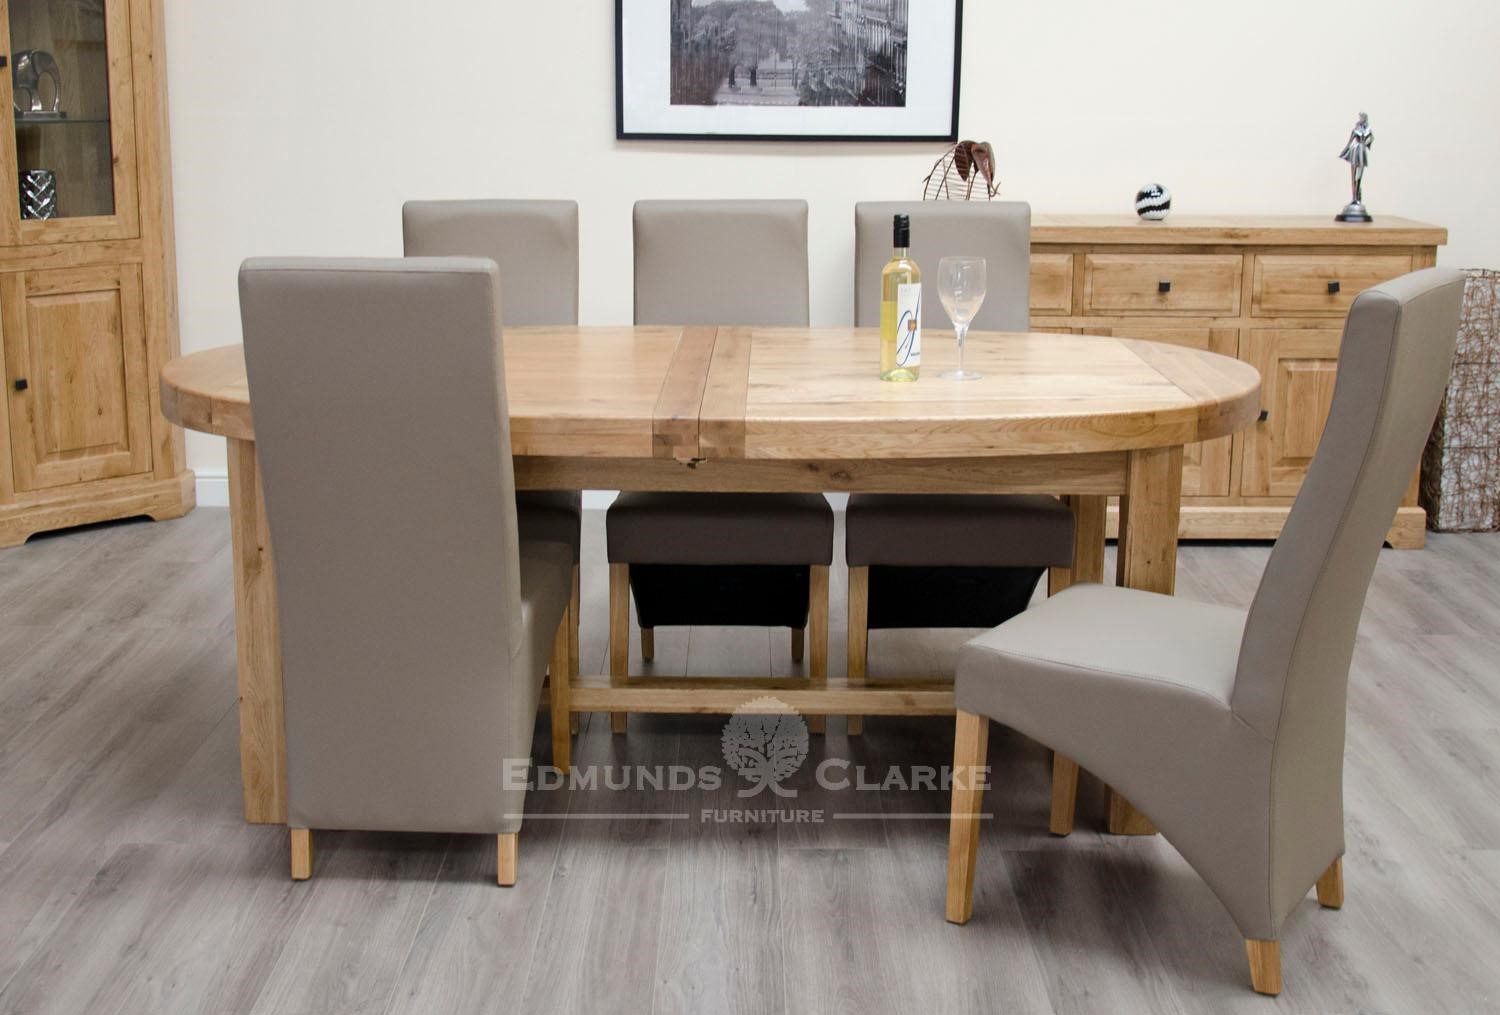 Solid Oak Large Oval Extending Dining Table | Edmunds & Clarke Ltd